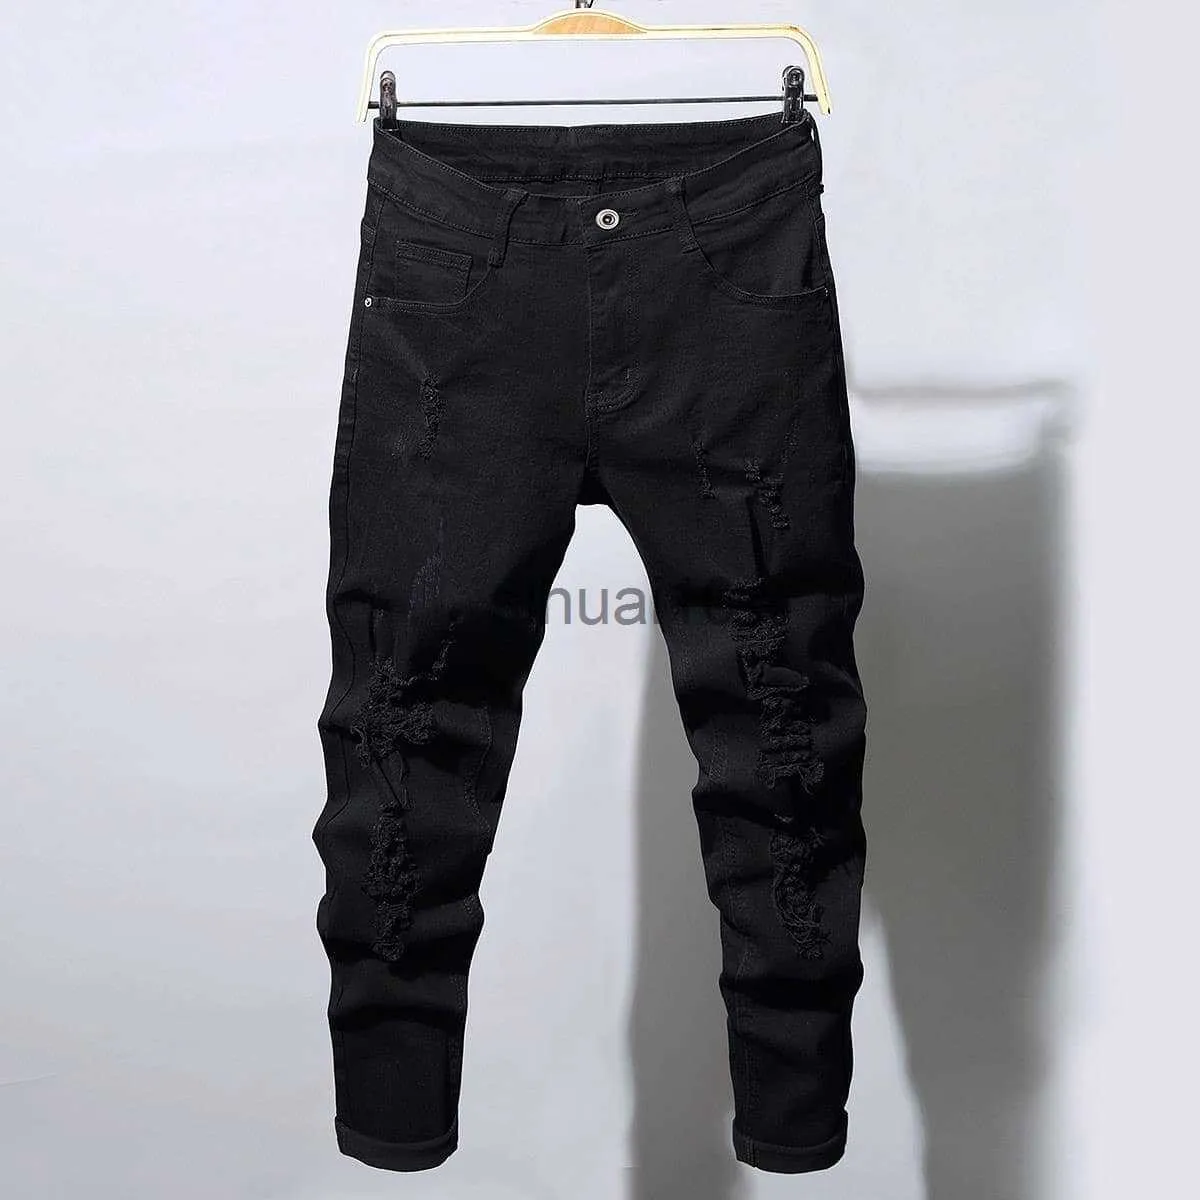 Buy Women Black Side Chain Slit Jeans Online at Sassafras